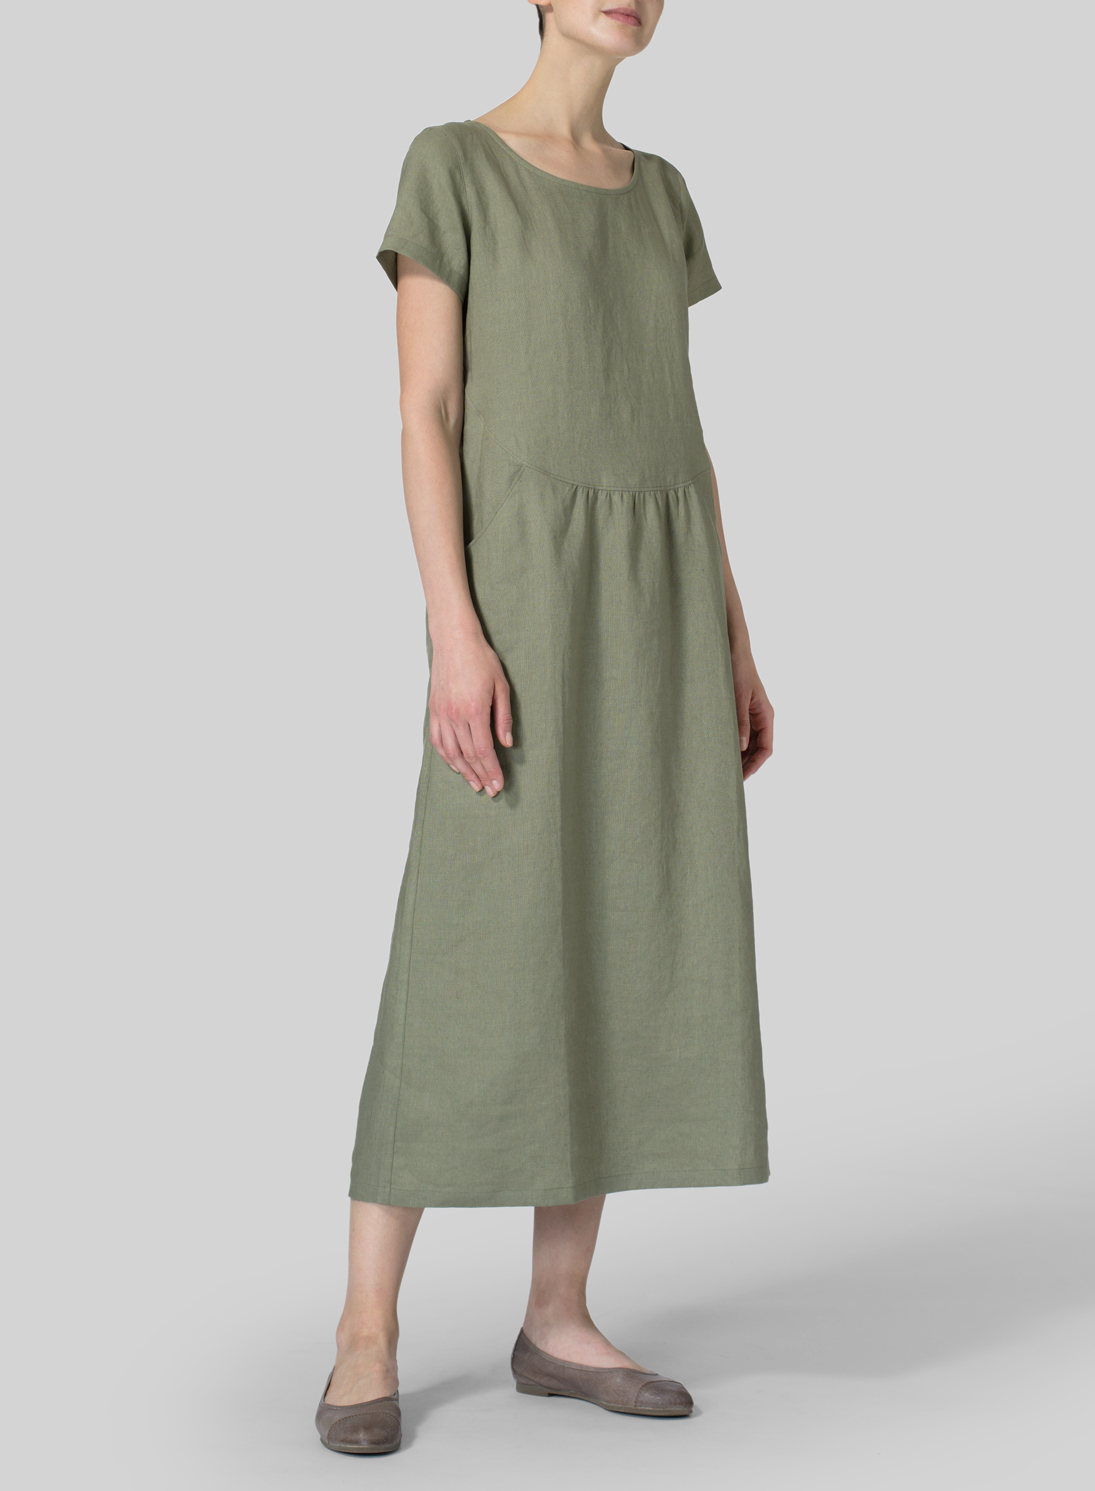 Linen Short Sleeve Dress - Size